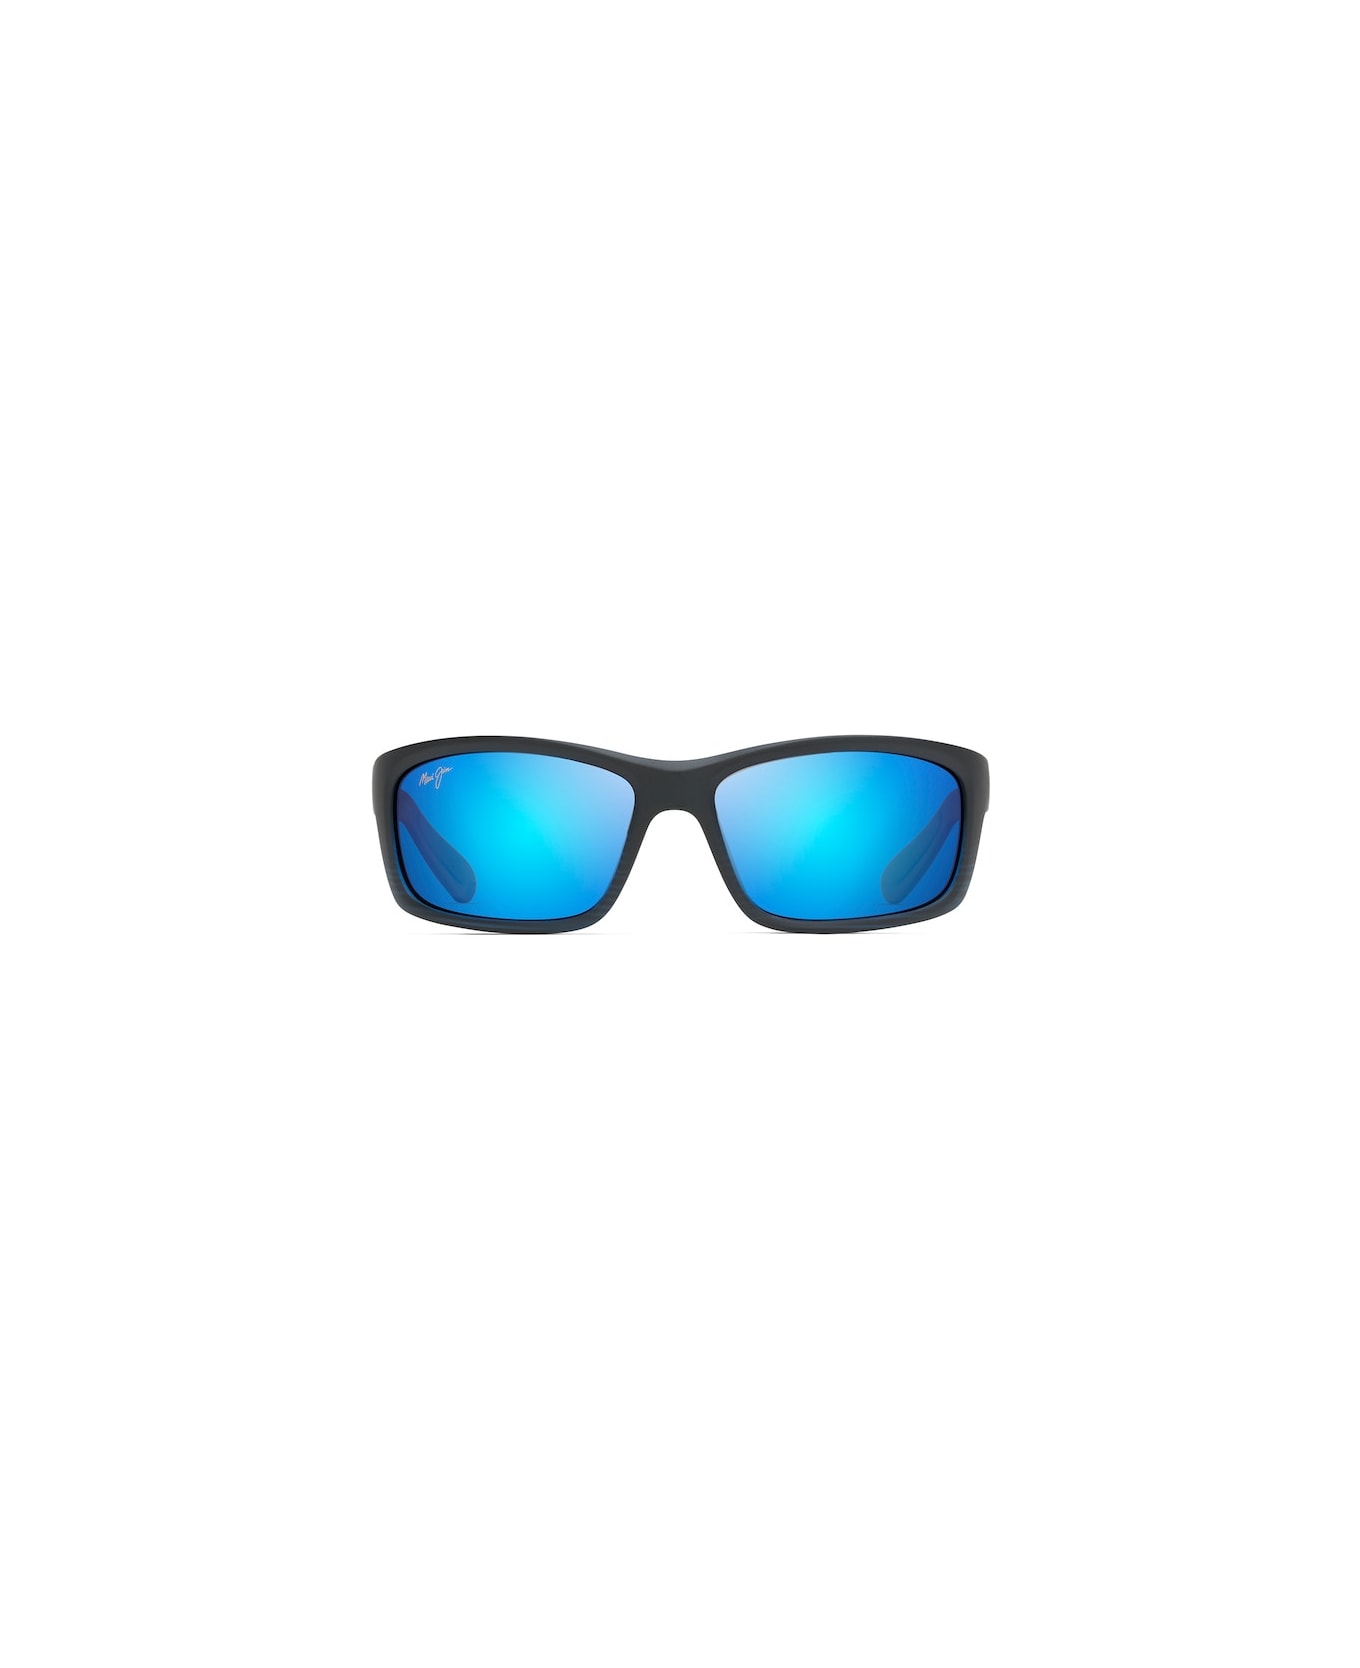 Maui Jim B766-08C Sunglasses - Nero Blu